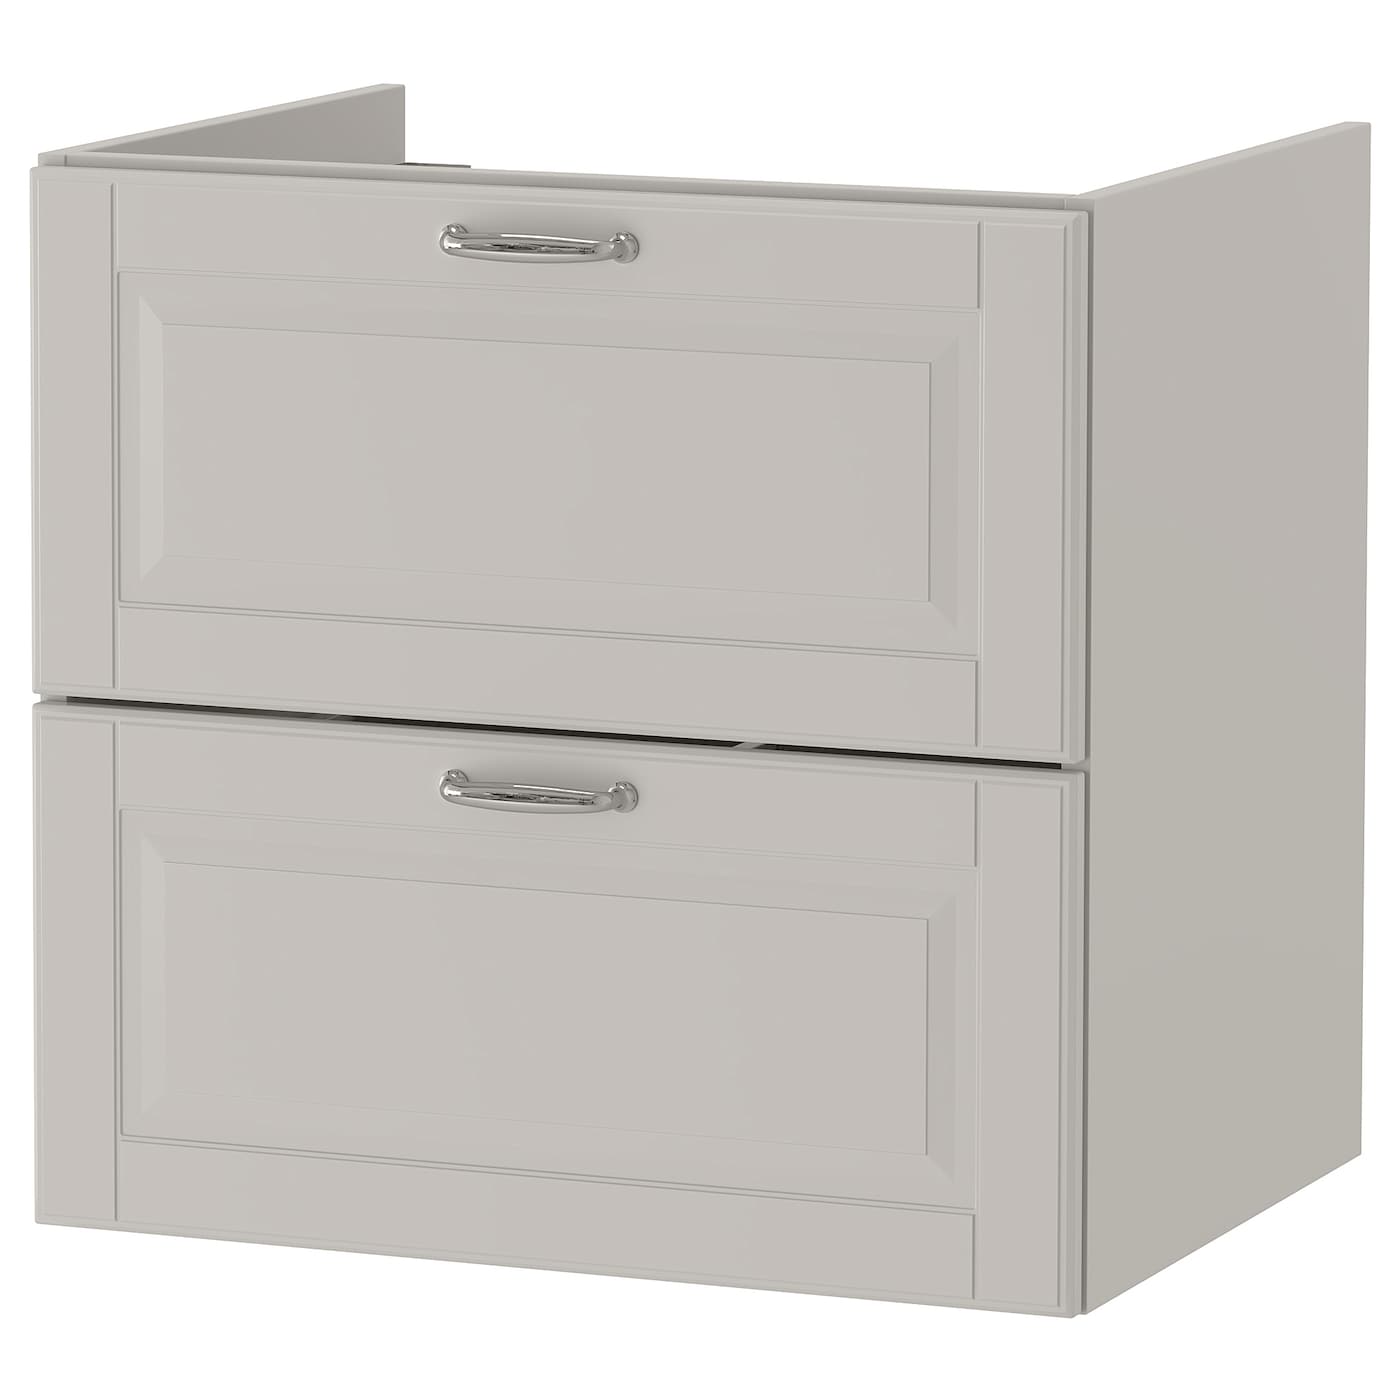 Шкаф под умывальник с 2 ящиками - GODMORGON IKEA/ ГОДМОРГОН ИКЕА, 60х58 см, серый